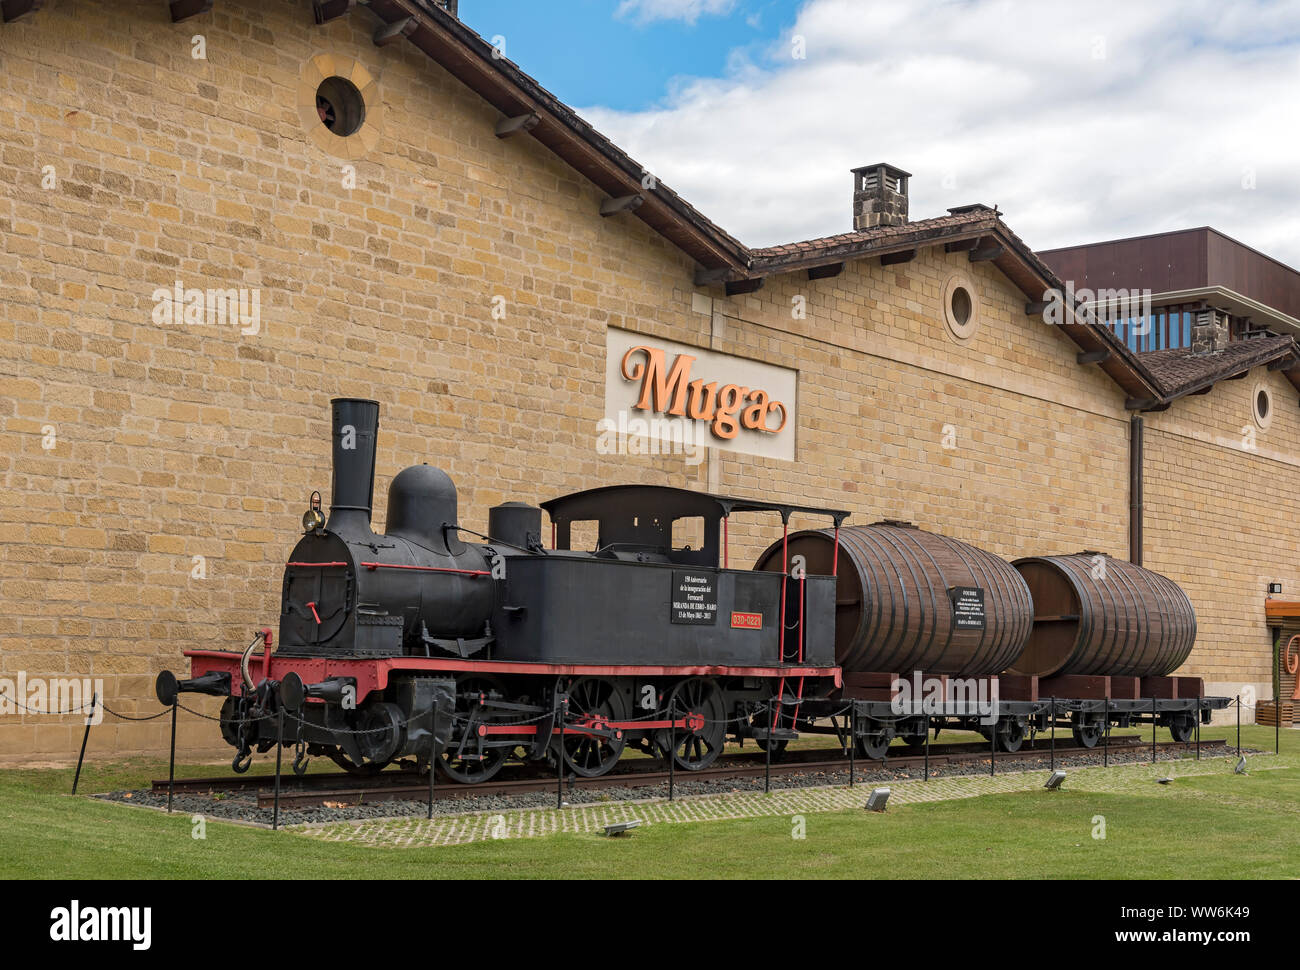 Train historique à Muga Winery, Barrio de la estación, Haro, La Rioja, Espagne Banque D'Images